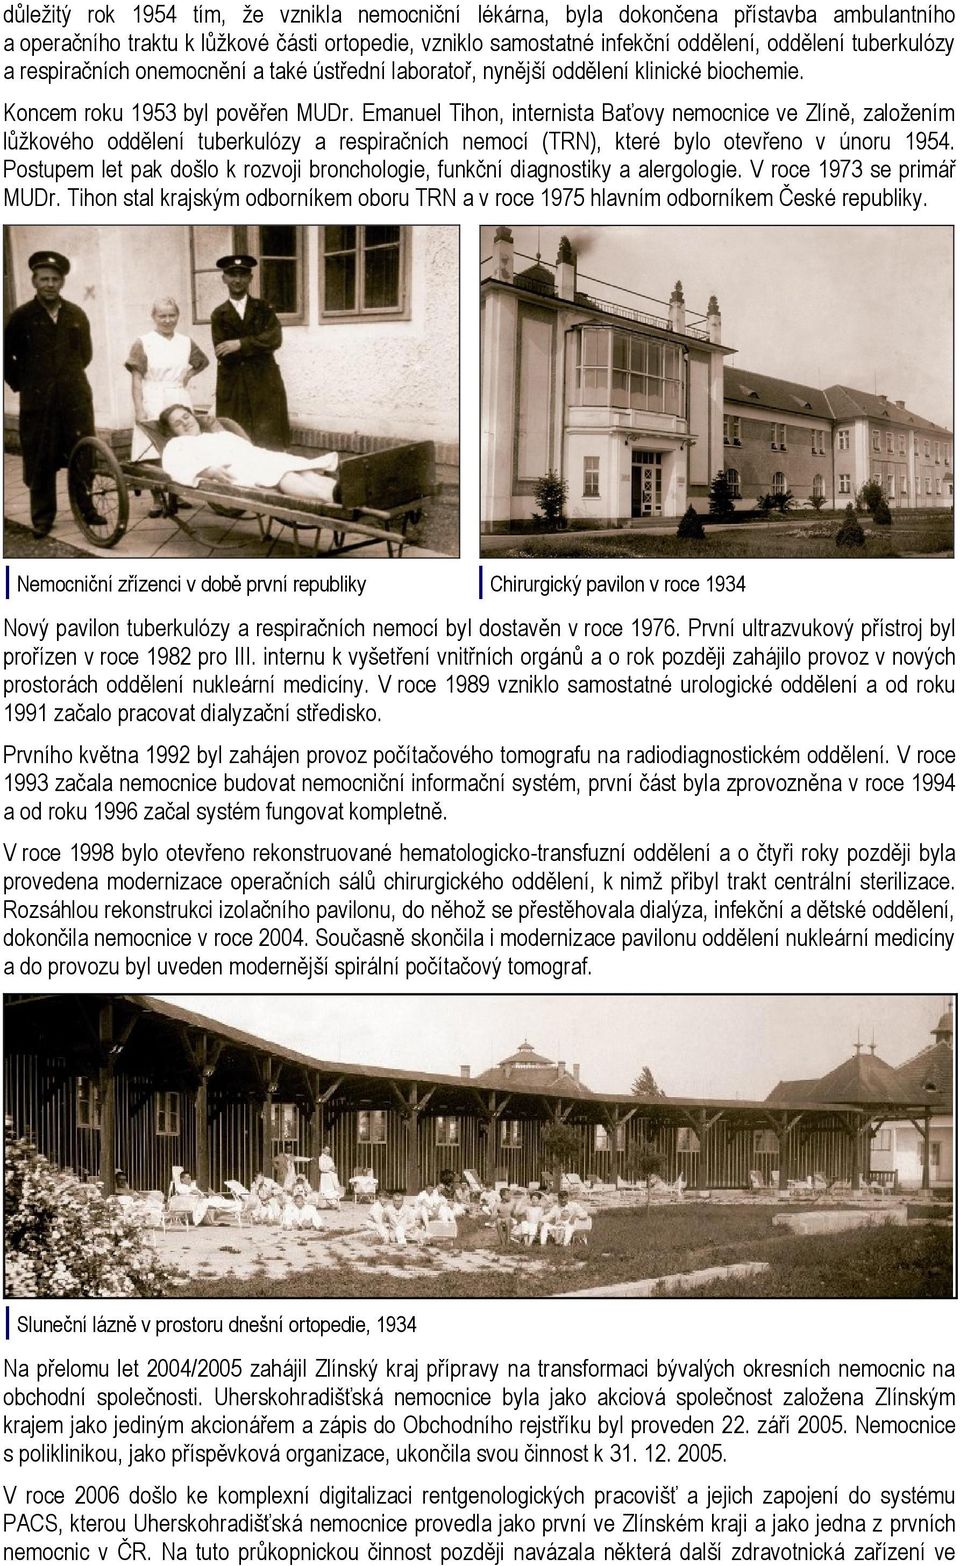 Emanuel Tihon, internista Baťovy nemocnice ve Zlíně, založením lůžkového oddělení tuberkulózy a respiračních nemocí (TRN), které bylo otevřeno v únoru 1954.